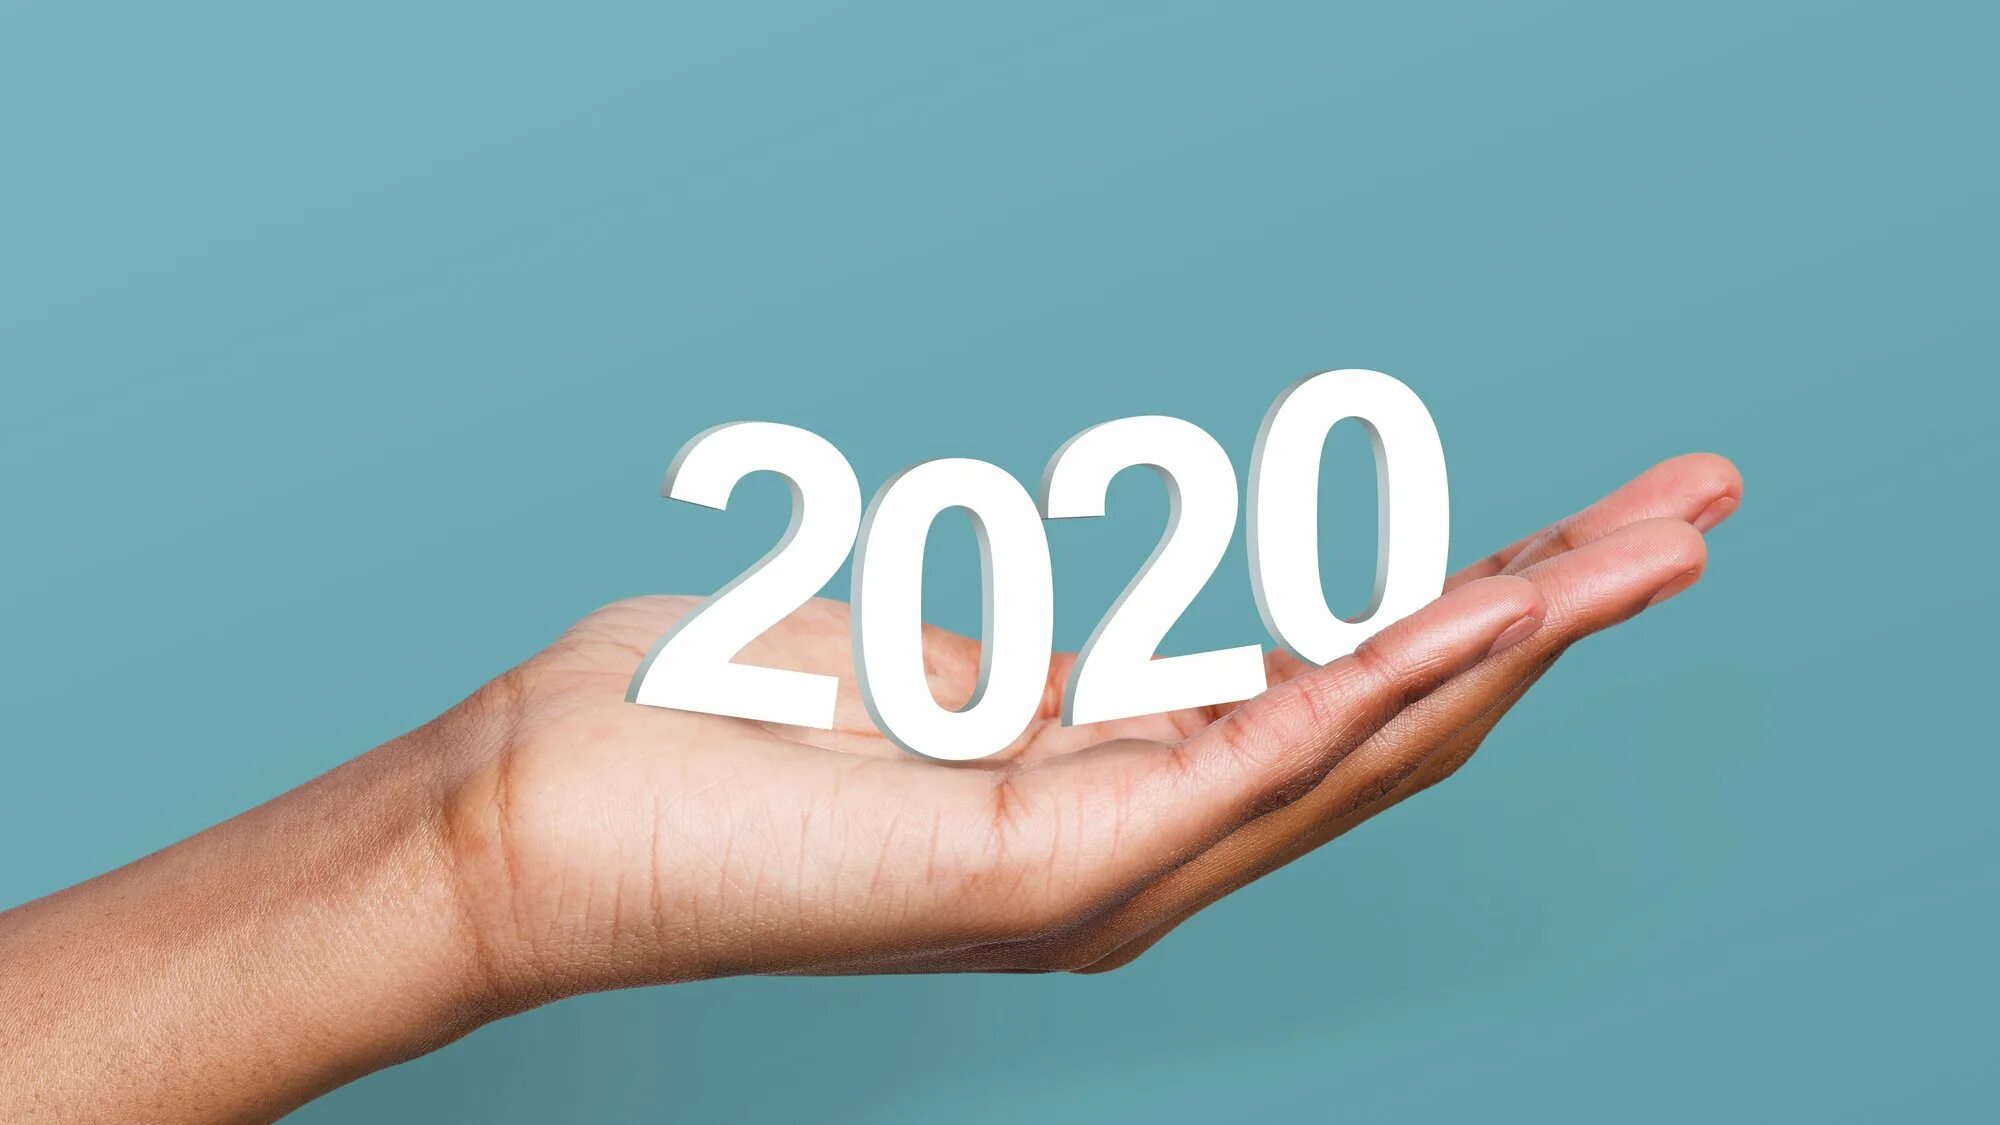 2020 Год год. Итоги 2020 года. 2020 Картинка. События 2020 в картинках. 19 апреля 2020 год